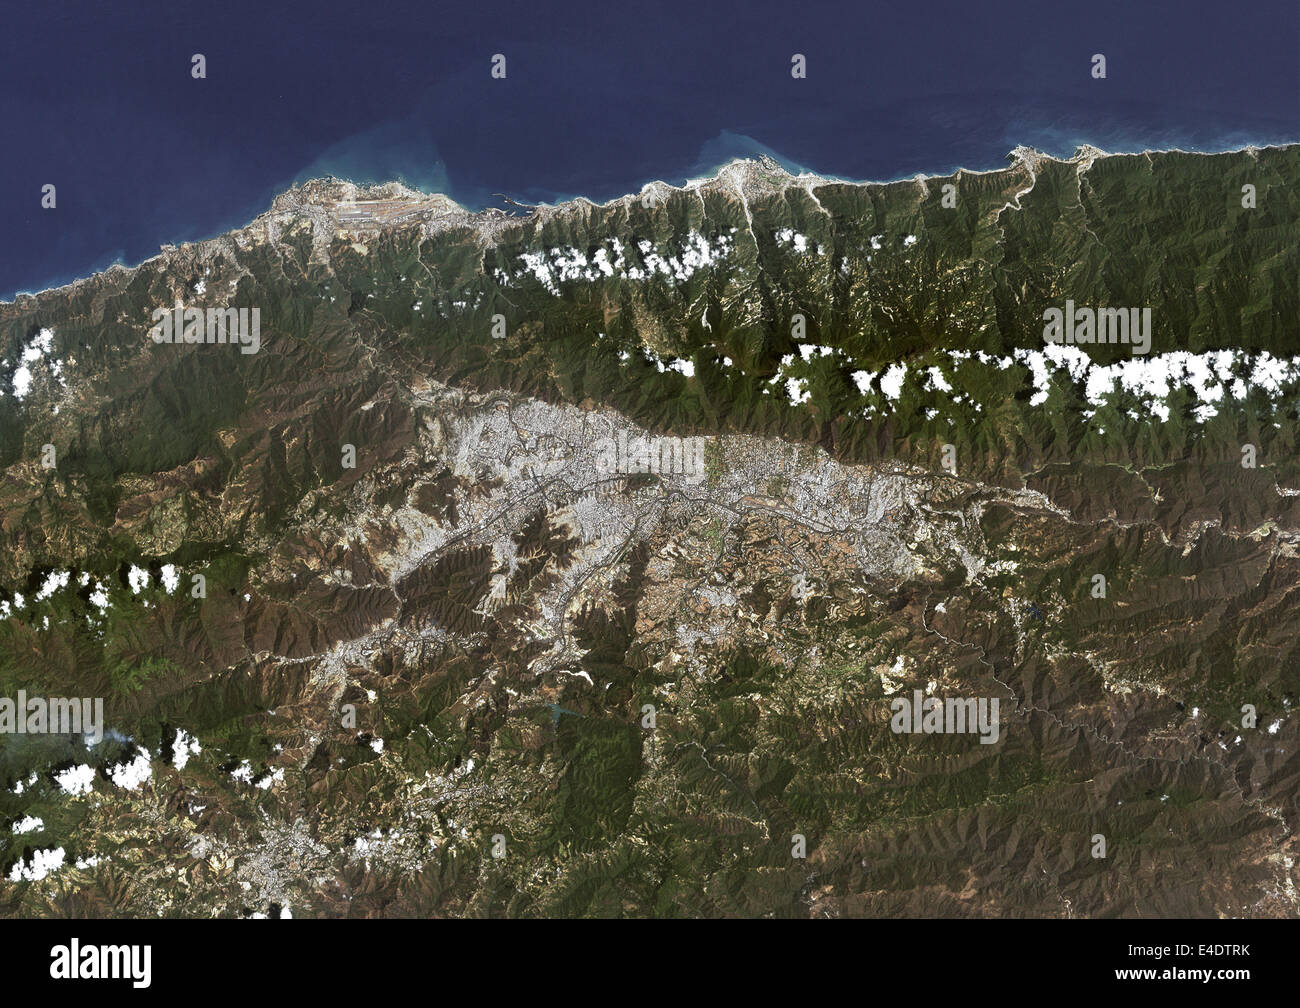 Caracas, Venezuela, Imagen de satélite de color verdadero. Caracas, Venezuela. True color imagen satelital de Caracas, ciudad capital de Ven Foto de stock